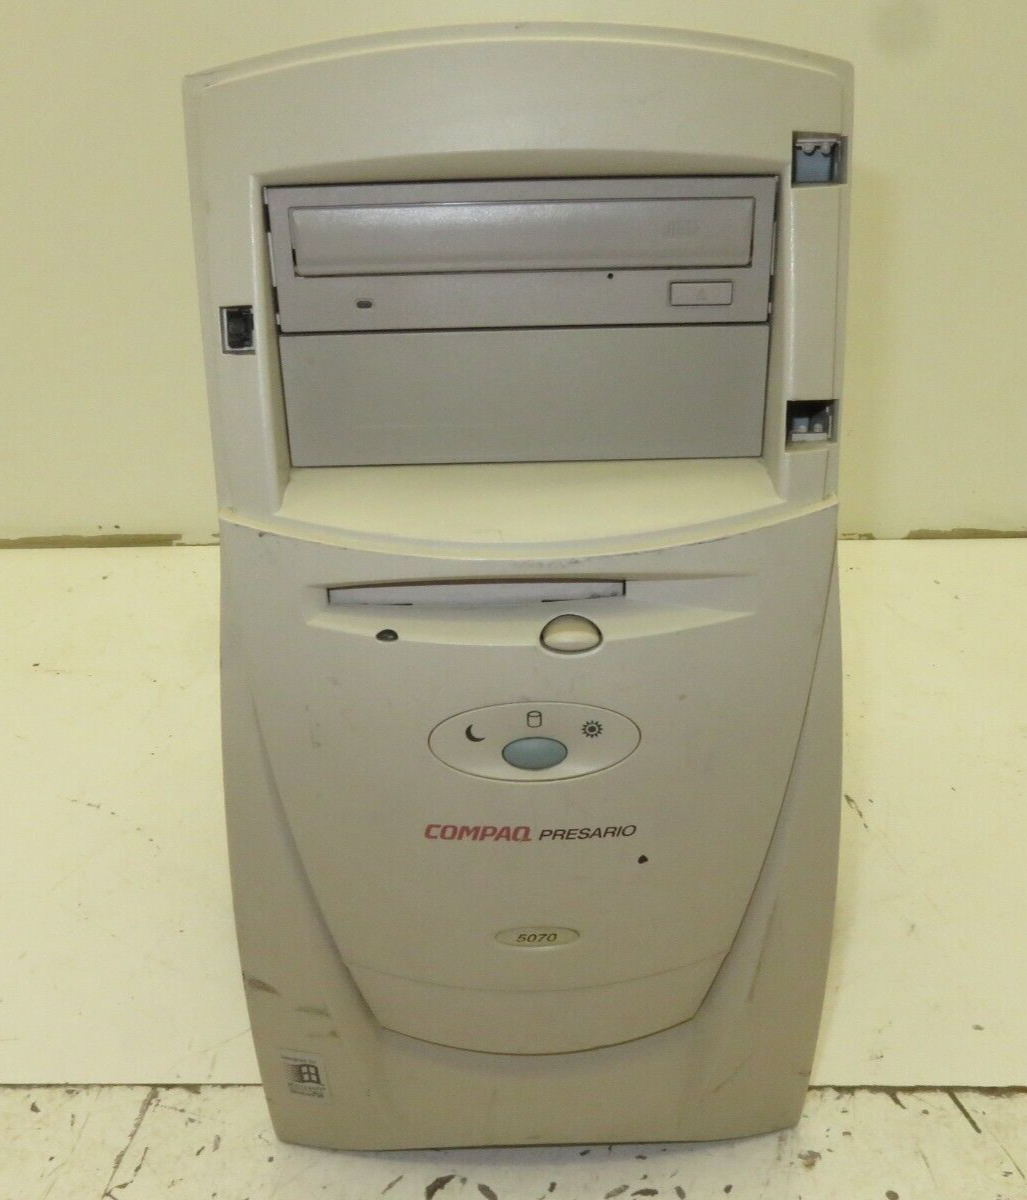 Vintage Compaq Presario 5070 Desktop Computer AMD K6-2 28MB Ram No HDD